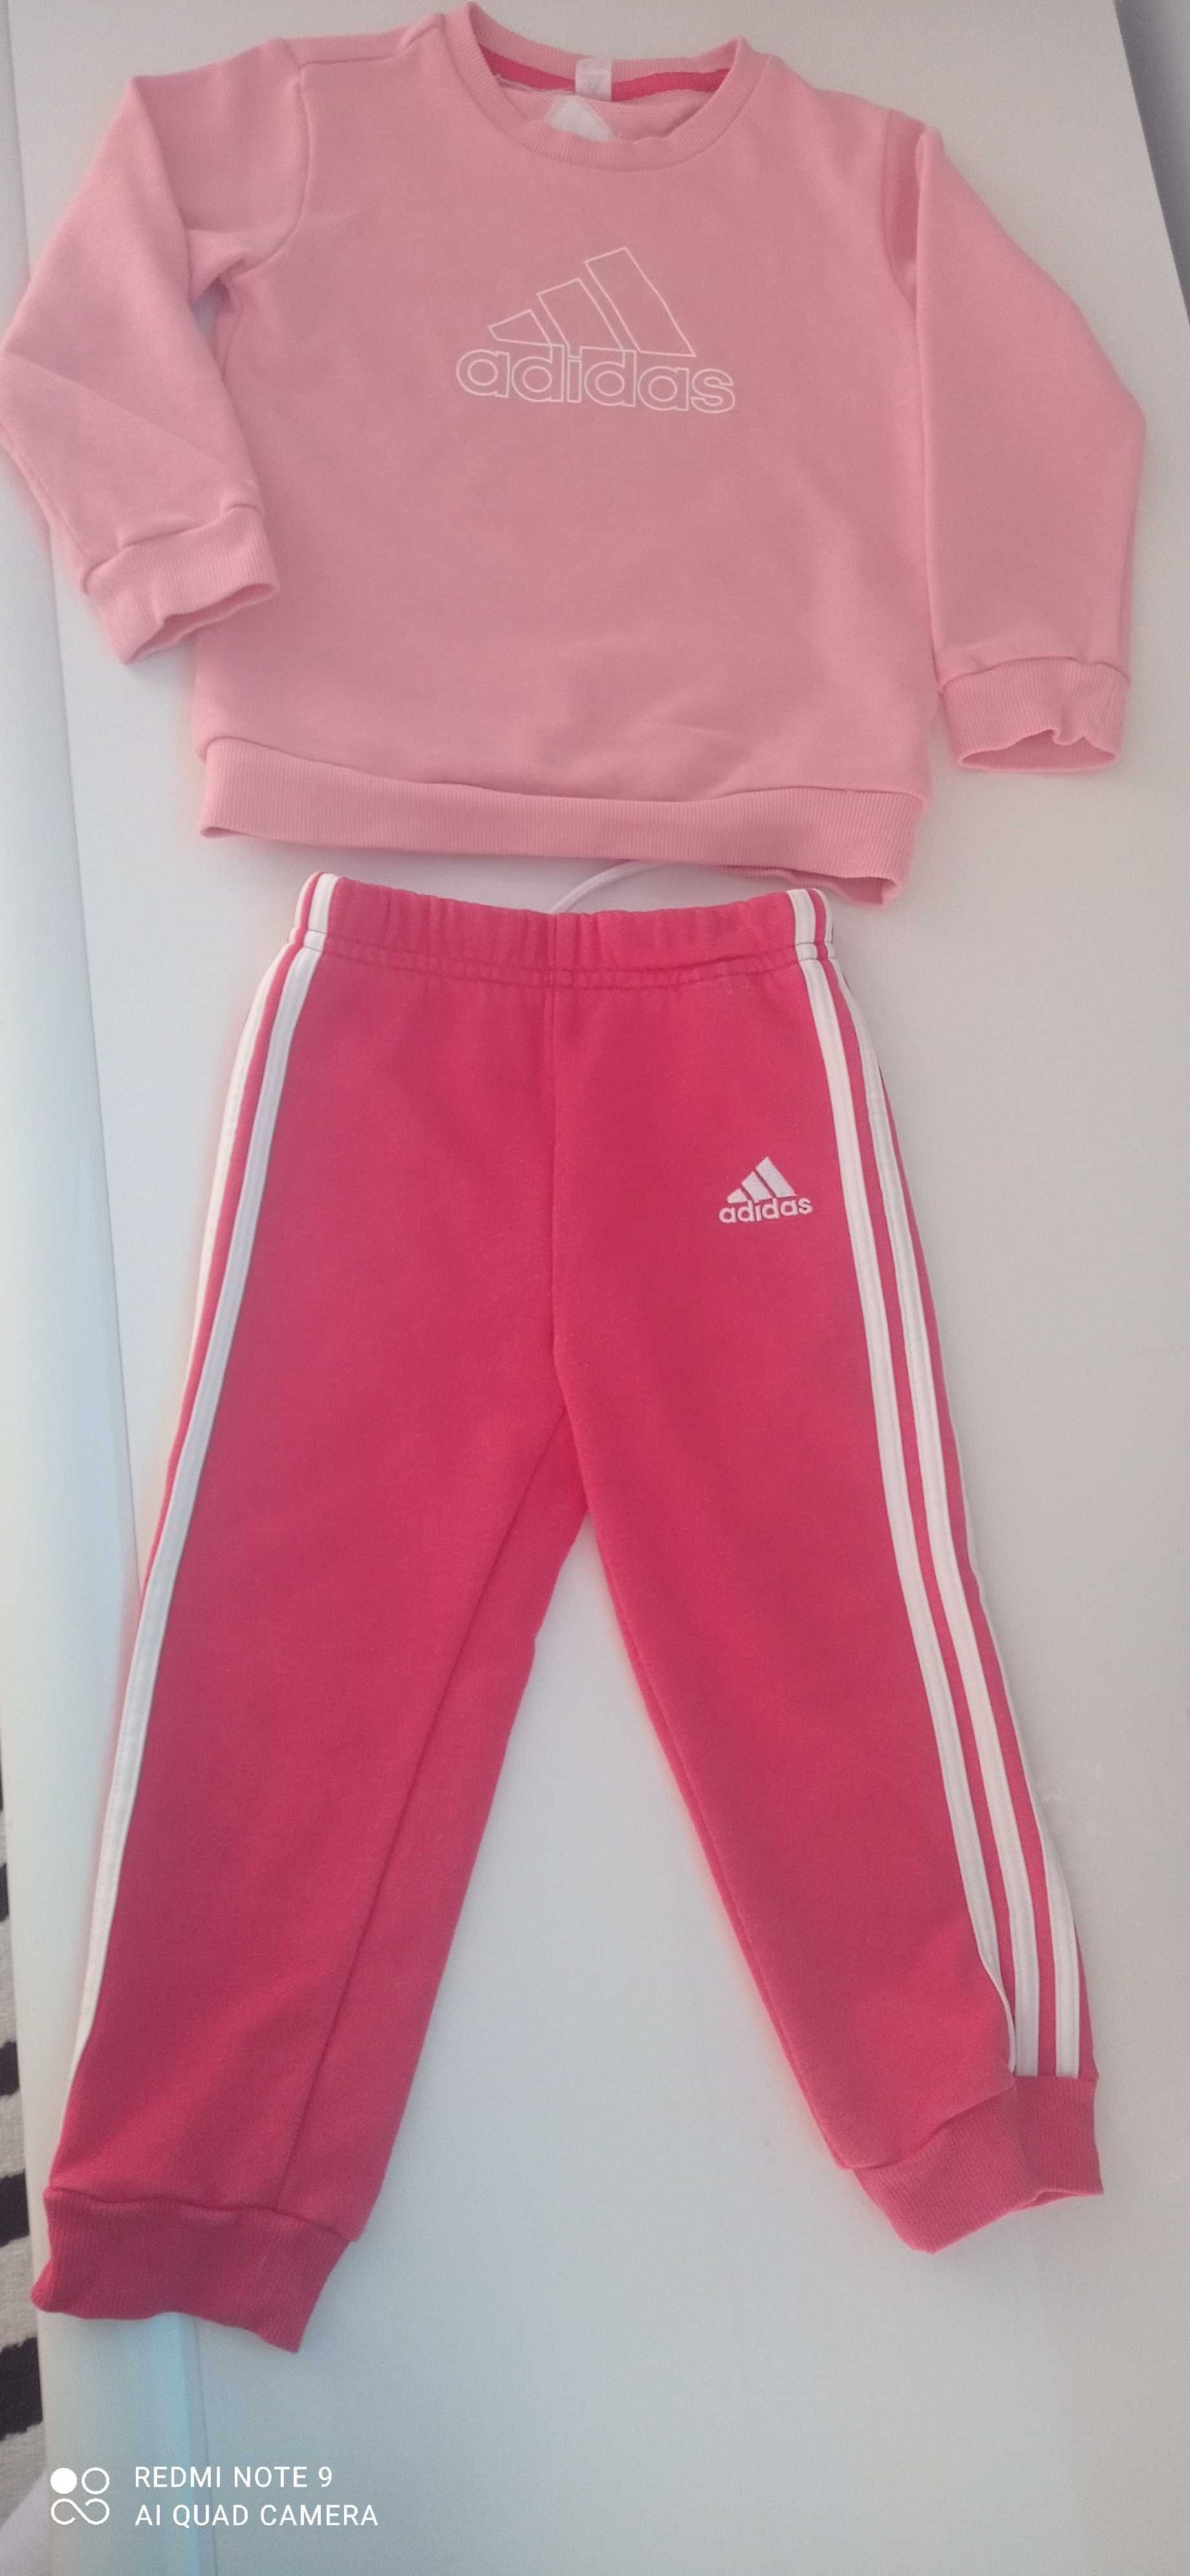 Różowe dresy Adidas, rozmiar 92 Ostrów Mazowiecka • OLX.pl